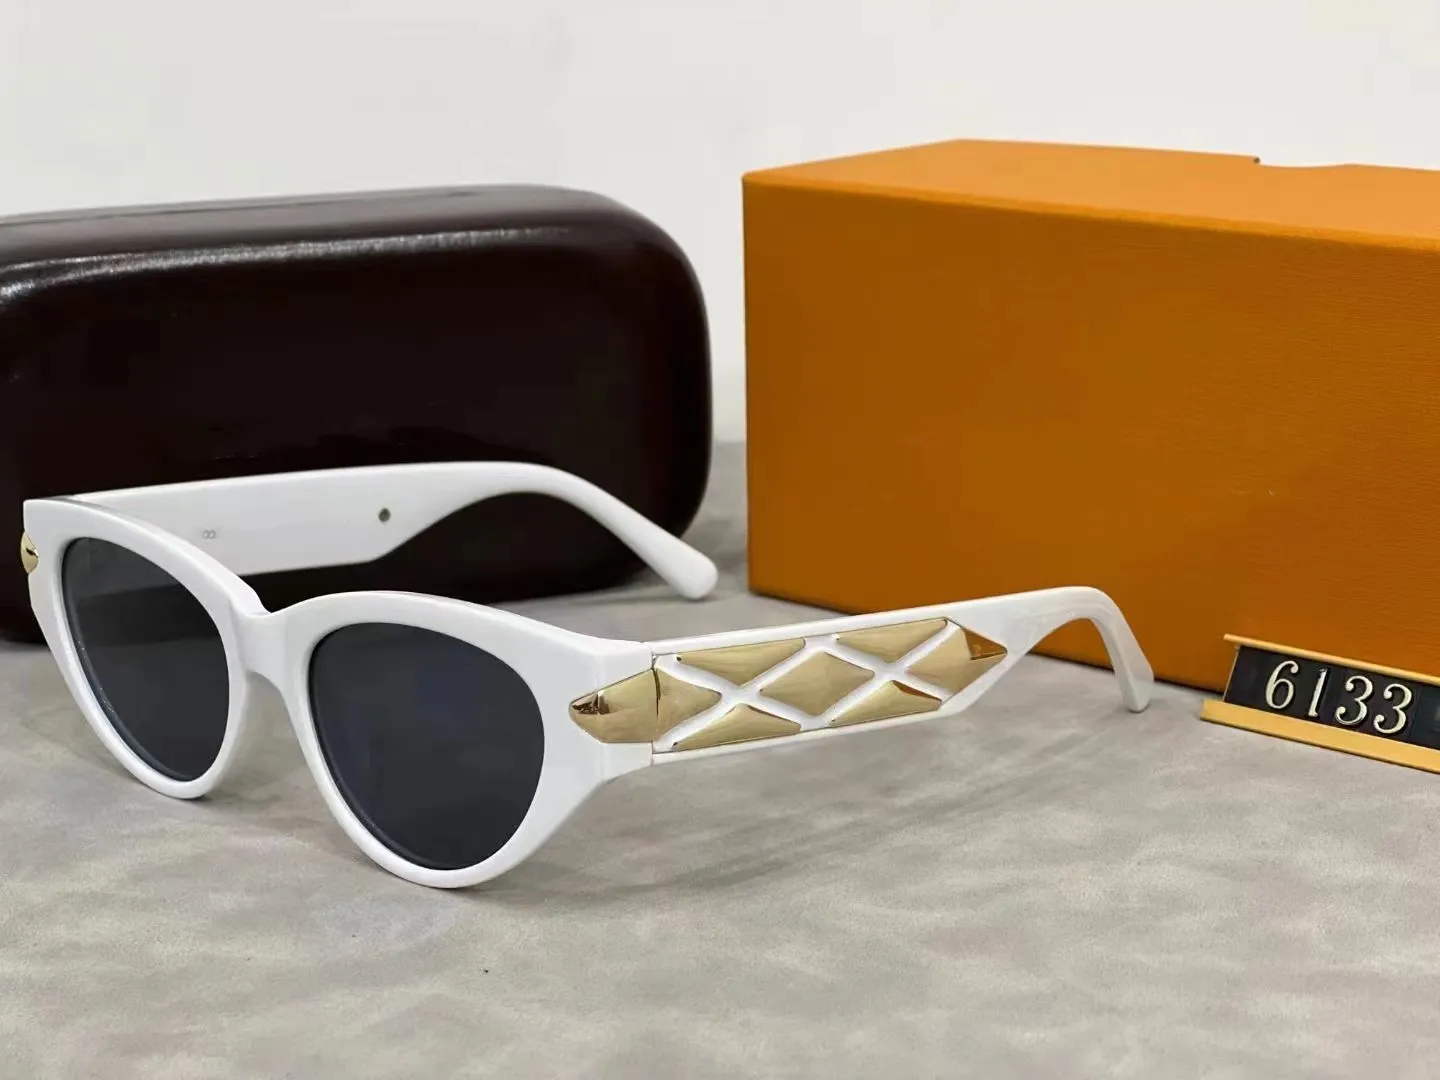 Kadınlar için Lüks Tasarımcı Güneş Gözlüğü Kedi Göz Güneş Gözlüğü Kişiselleştirilmiş Tasarım Altın Bacak Güneş Gözlüğü Sürüş Seyahat Alışveriş Plajı Kutu ile